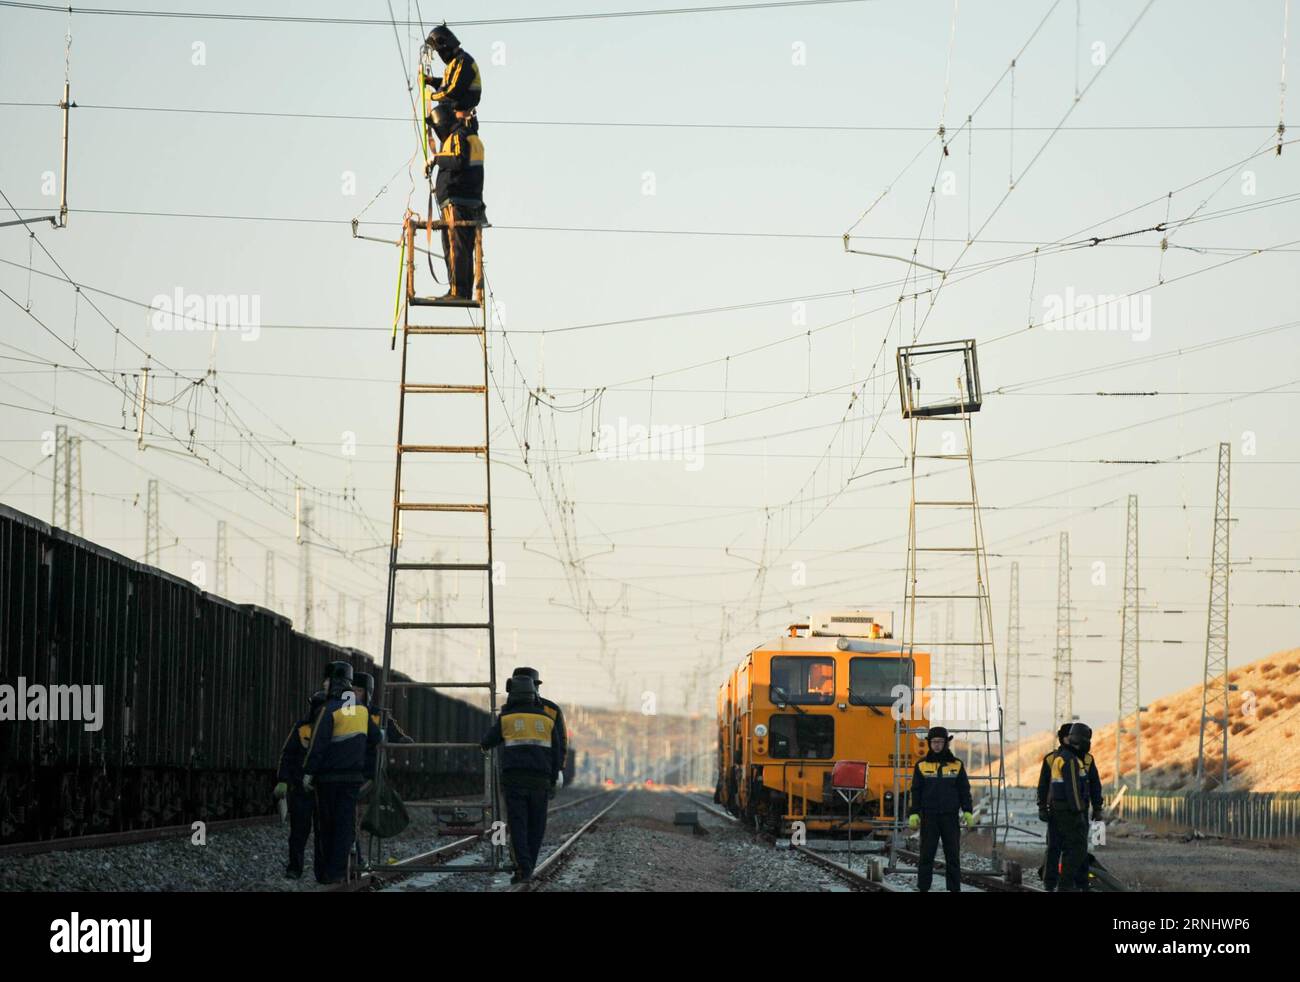 (161214) -- BAOTOU, 14 dicembre 2016 -- i lavoratori ferroviari mantengono il sistema catenario nella sezione Xiangshawan di Baotou, regione autonoma della Mongolia interna della Cina settentrionale, 14 dicembre 2016. Circa 40 lavoratori sono responsabili dei lavori di manutenzione della catenaria che coprono 247,5 chilometri a Xiangshawan, una sezione situata nel deserto del Kubuqi. )(wyo) CINA-MONGOLIA-INTERNA-MANUTENZIONE FERROVIARIA (CN) LianxZhen PUBLICATIONxNOTxINxCHN 161214 Baotou DEC 14 2016 ferrovieri mantengono il sistema di catenaria a Xiangshawan sezione di Baotou regione autonoma della Mongolia interna della Cina del Nord DEC 14 2016 circa 40 lavoratori sono resp Foto Stock